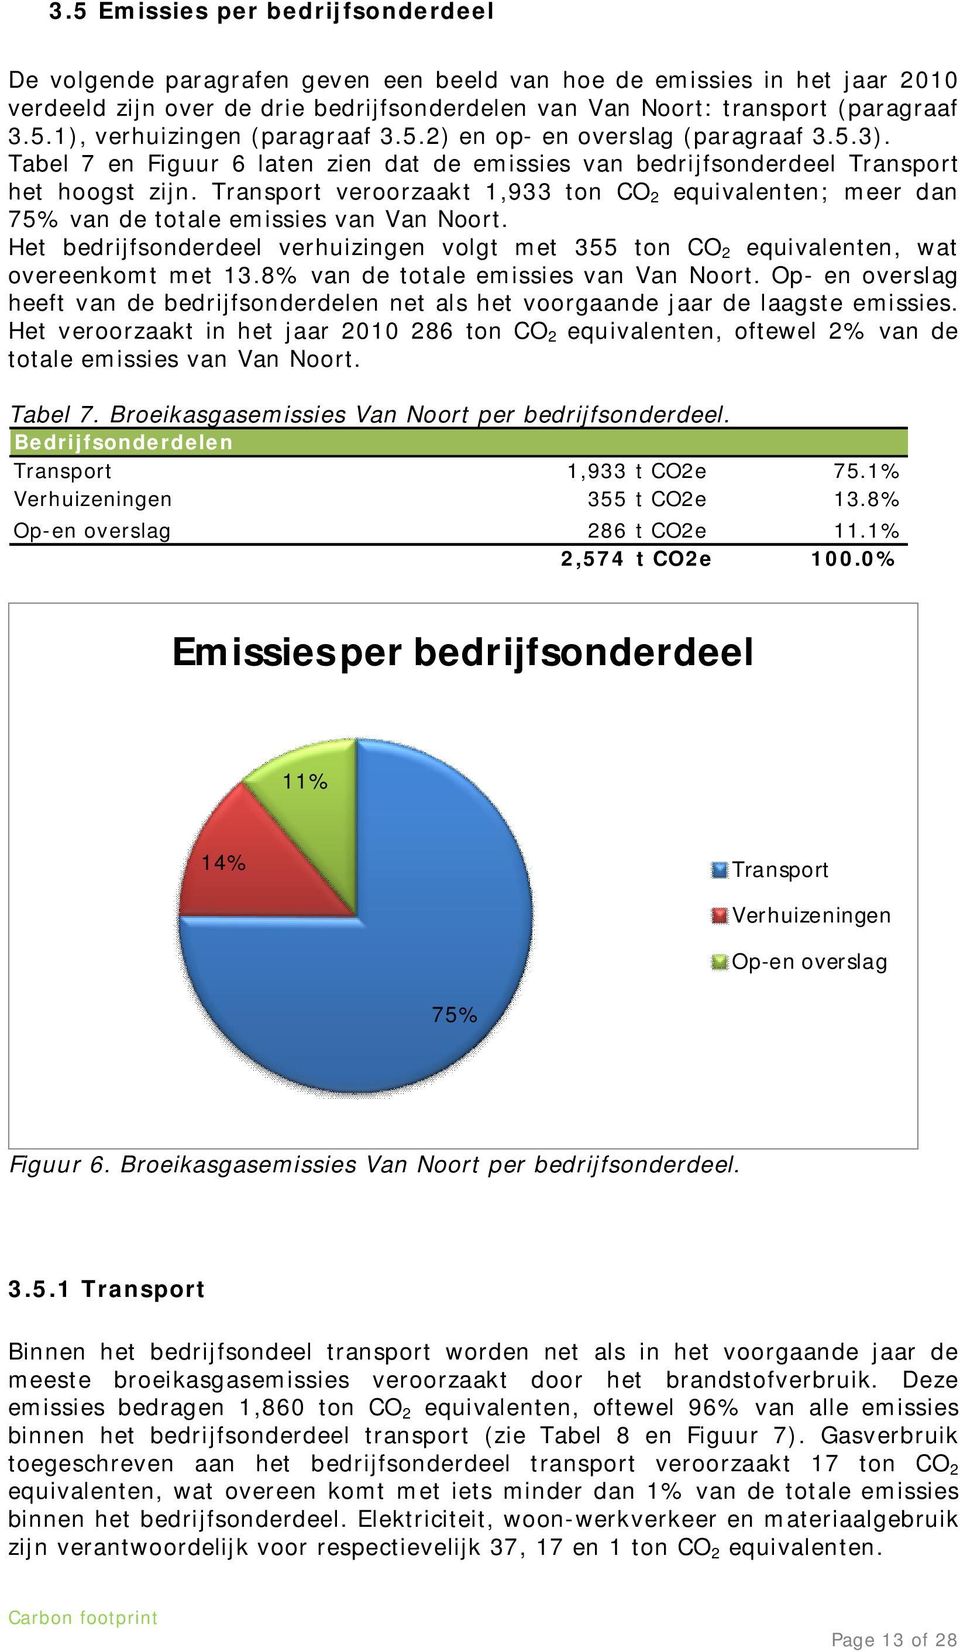 Transport veroorzaakt 1,933 ton CO 2 equivalenten; meer dan 75% van de totale emissies van Van Noort. Het bedrijfsonderdeel verhuizingen volgt met 355 ton CO 2 equivalenten, wat overeenkomt met 13.